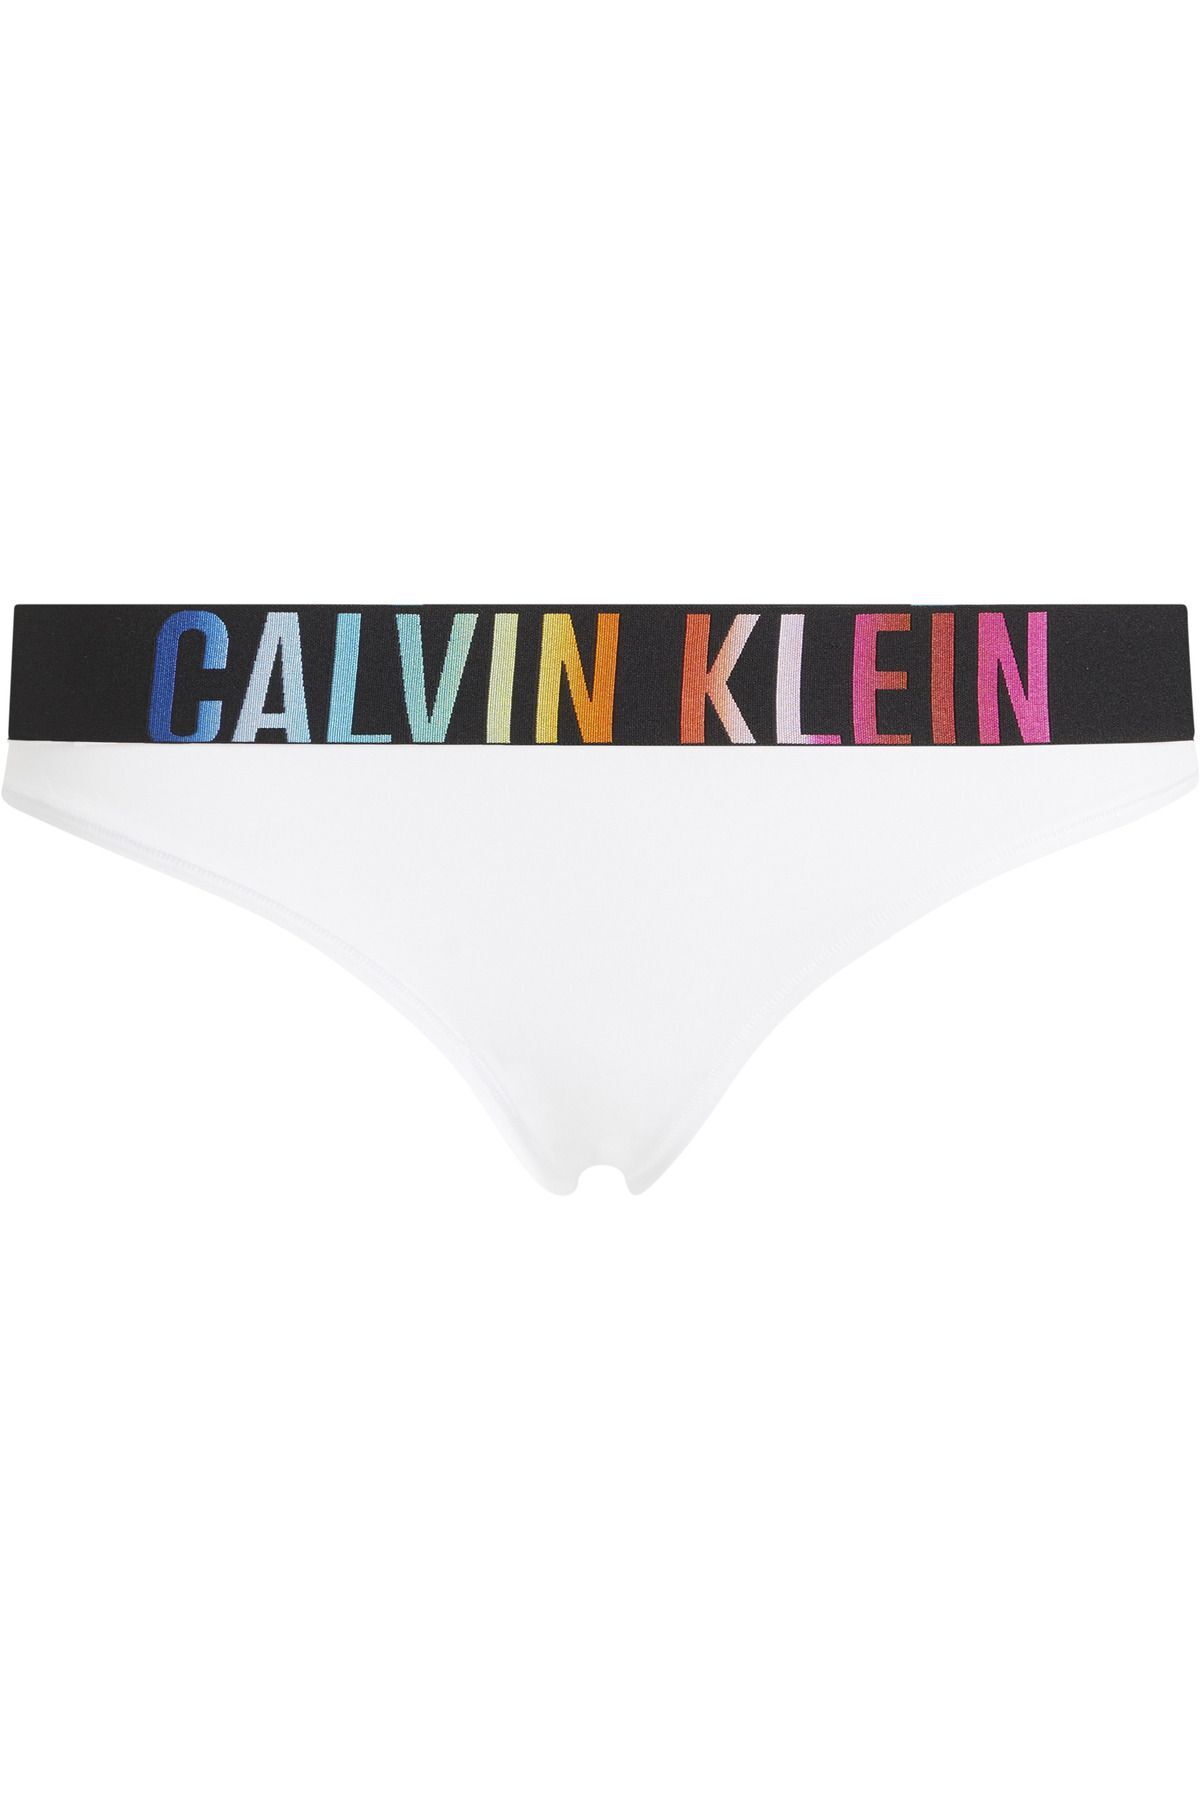 Calvin Klein Kadın Marka Logolu Elastik Bantlı Günlük Kullanıma Uygun White Külot 000qf7833e-100